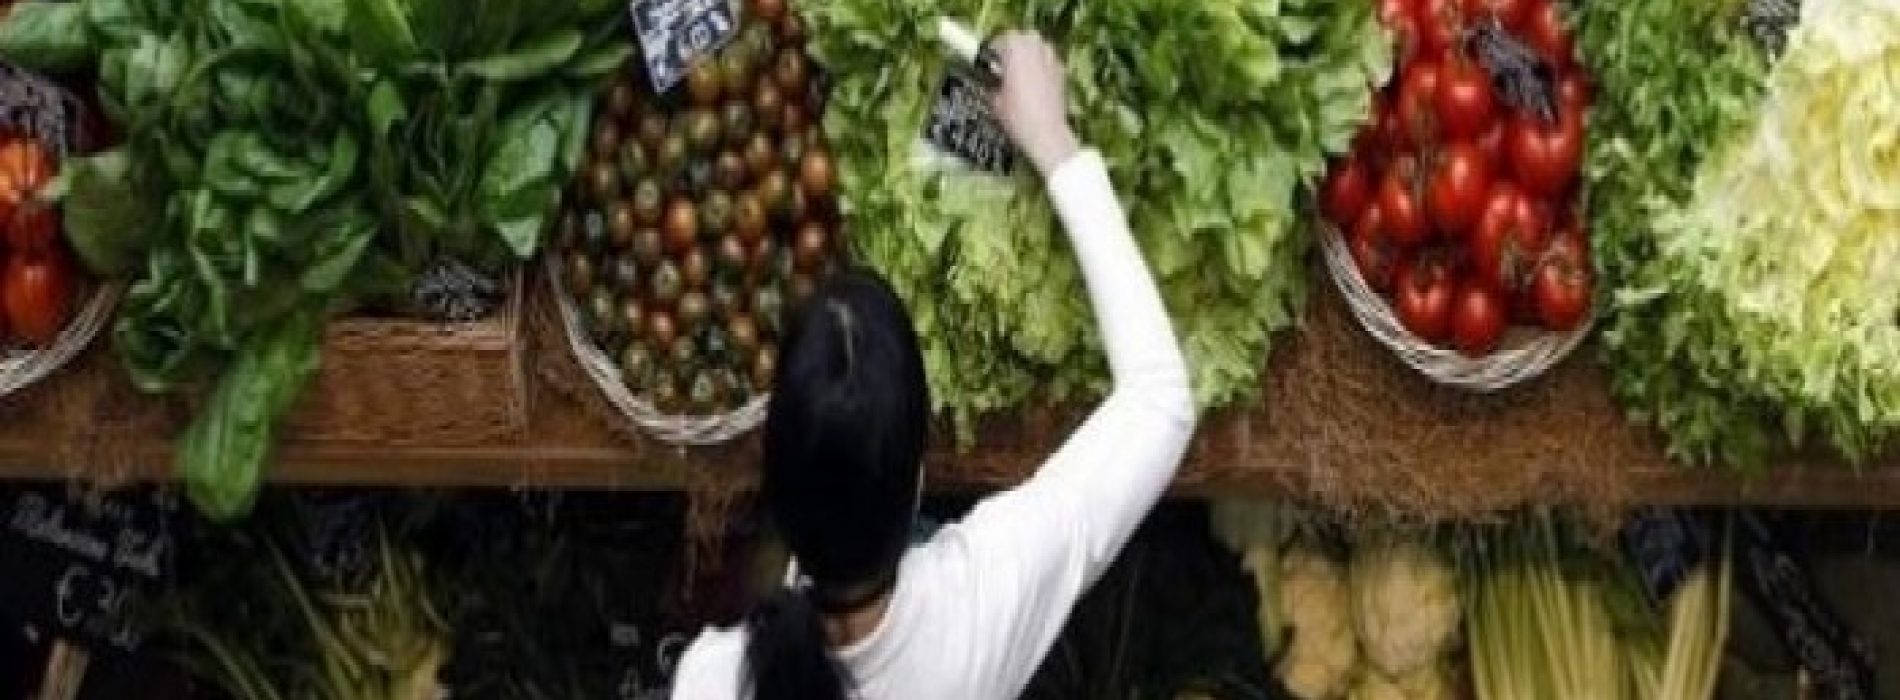 VIDEO: Ze zitten op onze bespoten groenten, ze zijn risicovol en de overheid doet er niets tegen